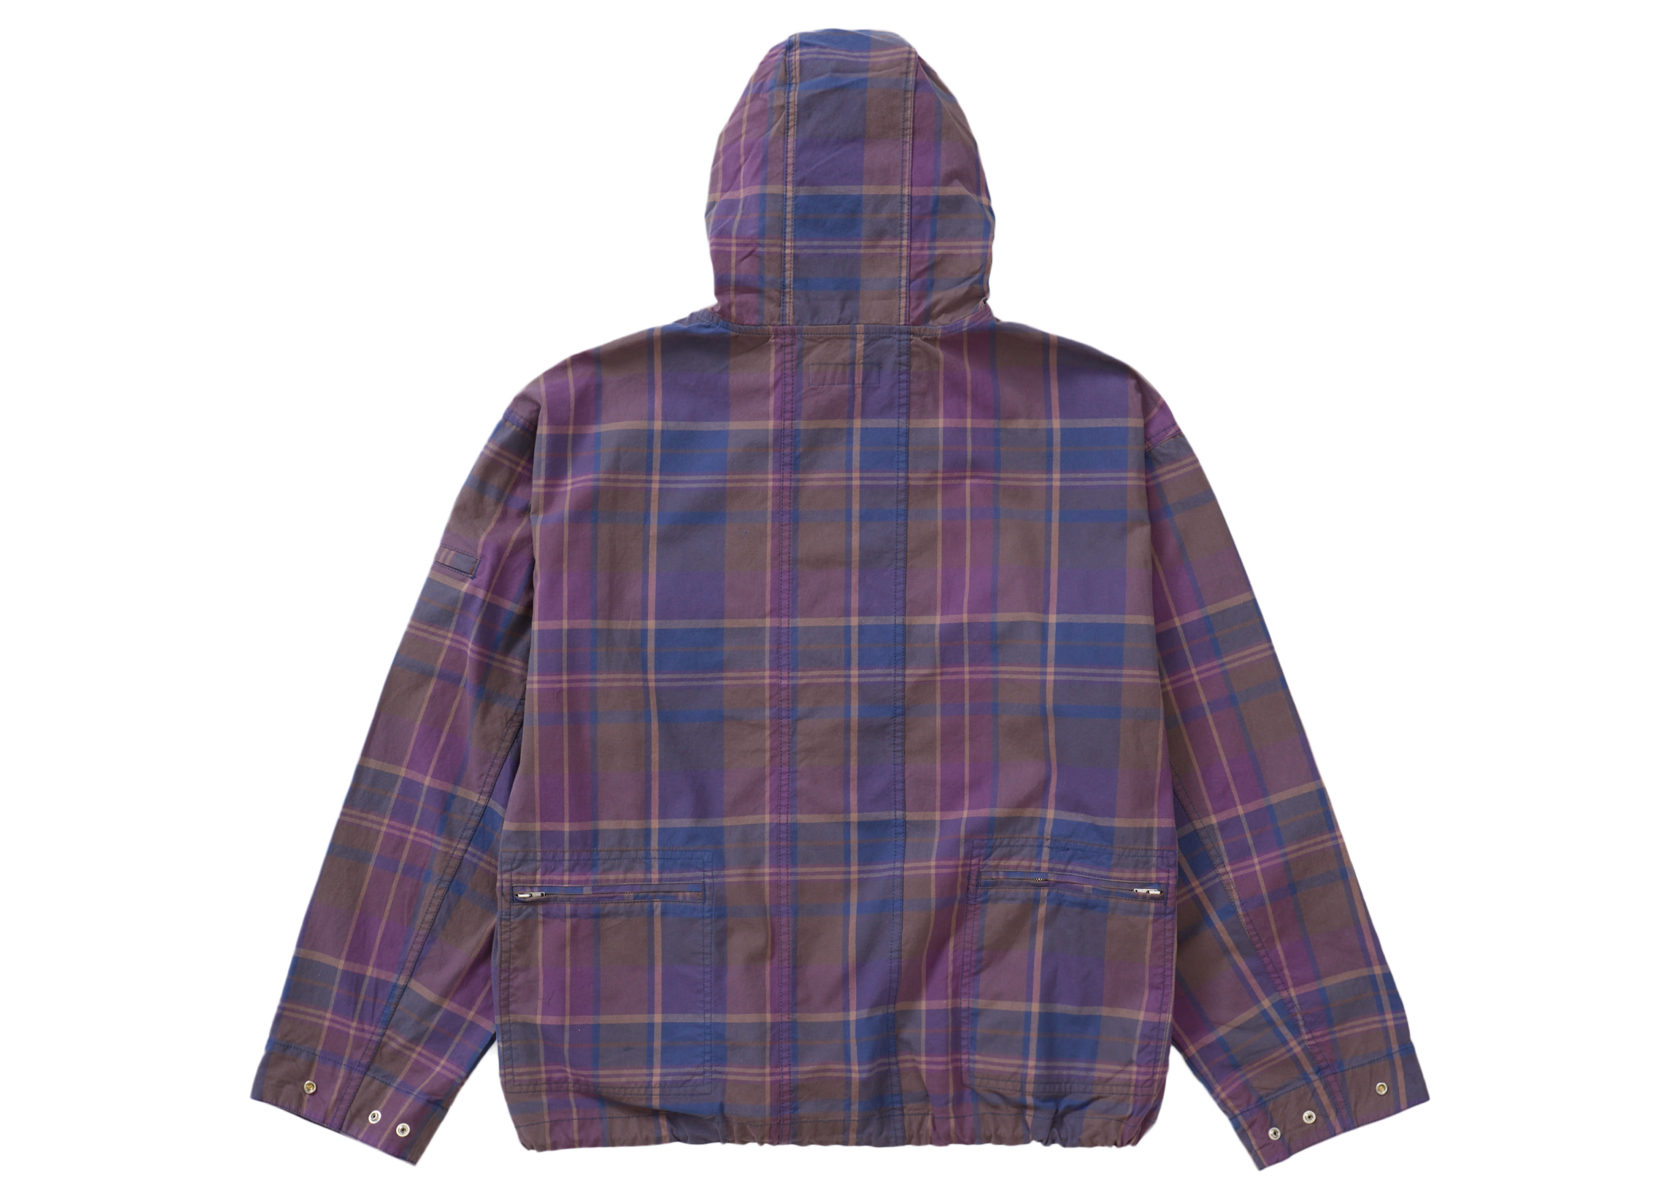 16,000円supreme cotton hooded jacket brown plaid